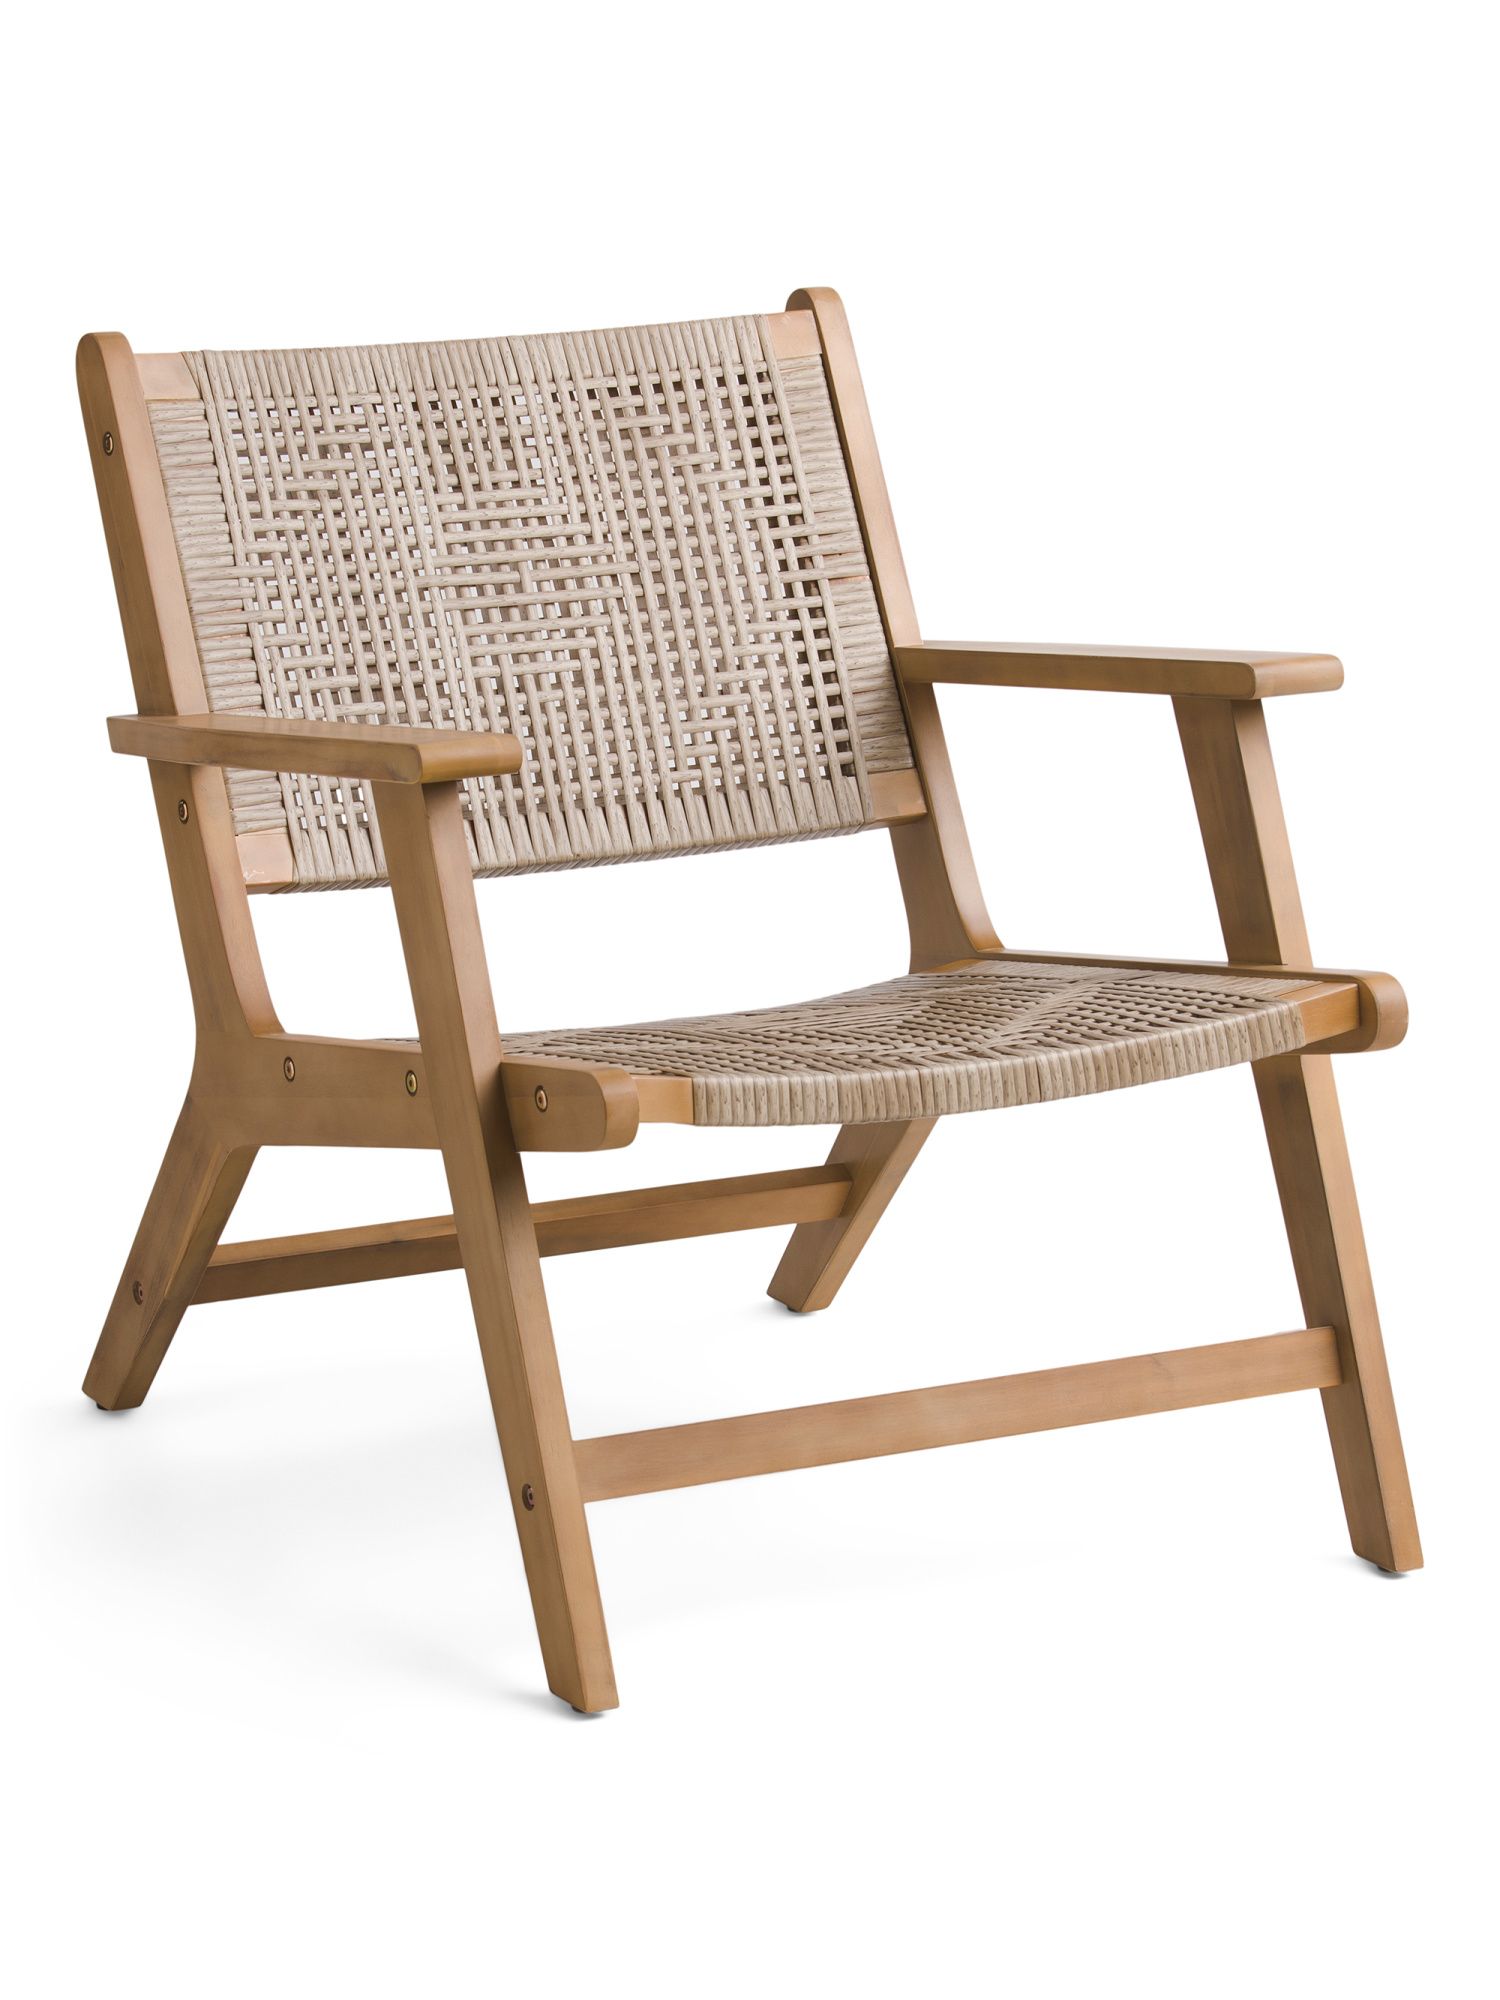 Acacia Wood Outdoor Chair | TJ Maxx